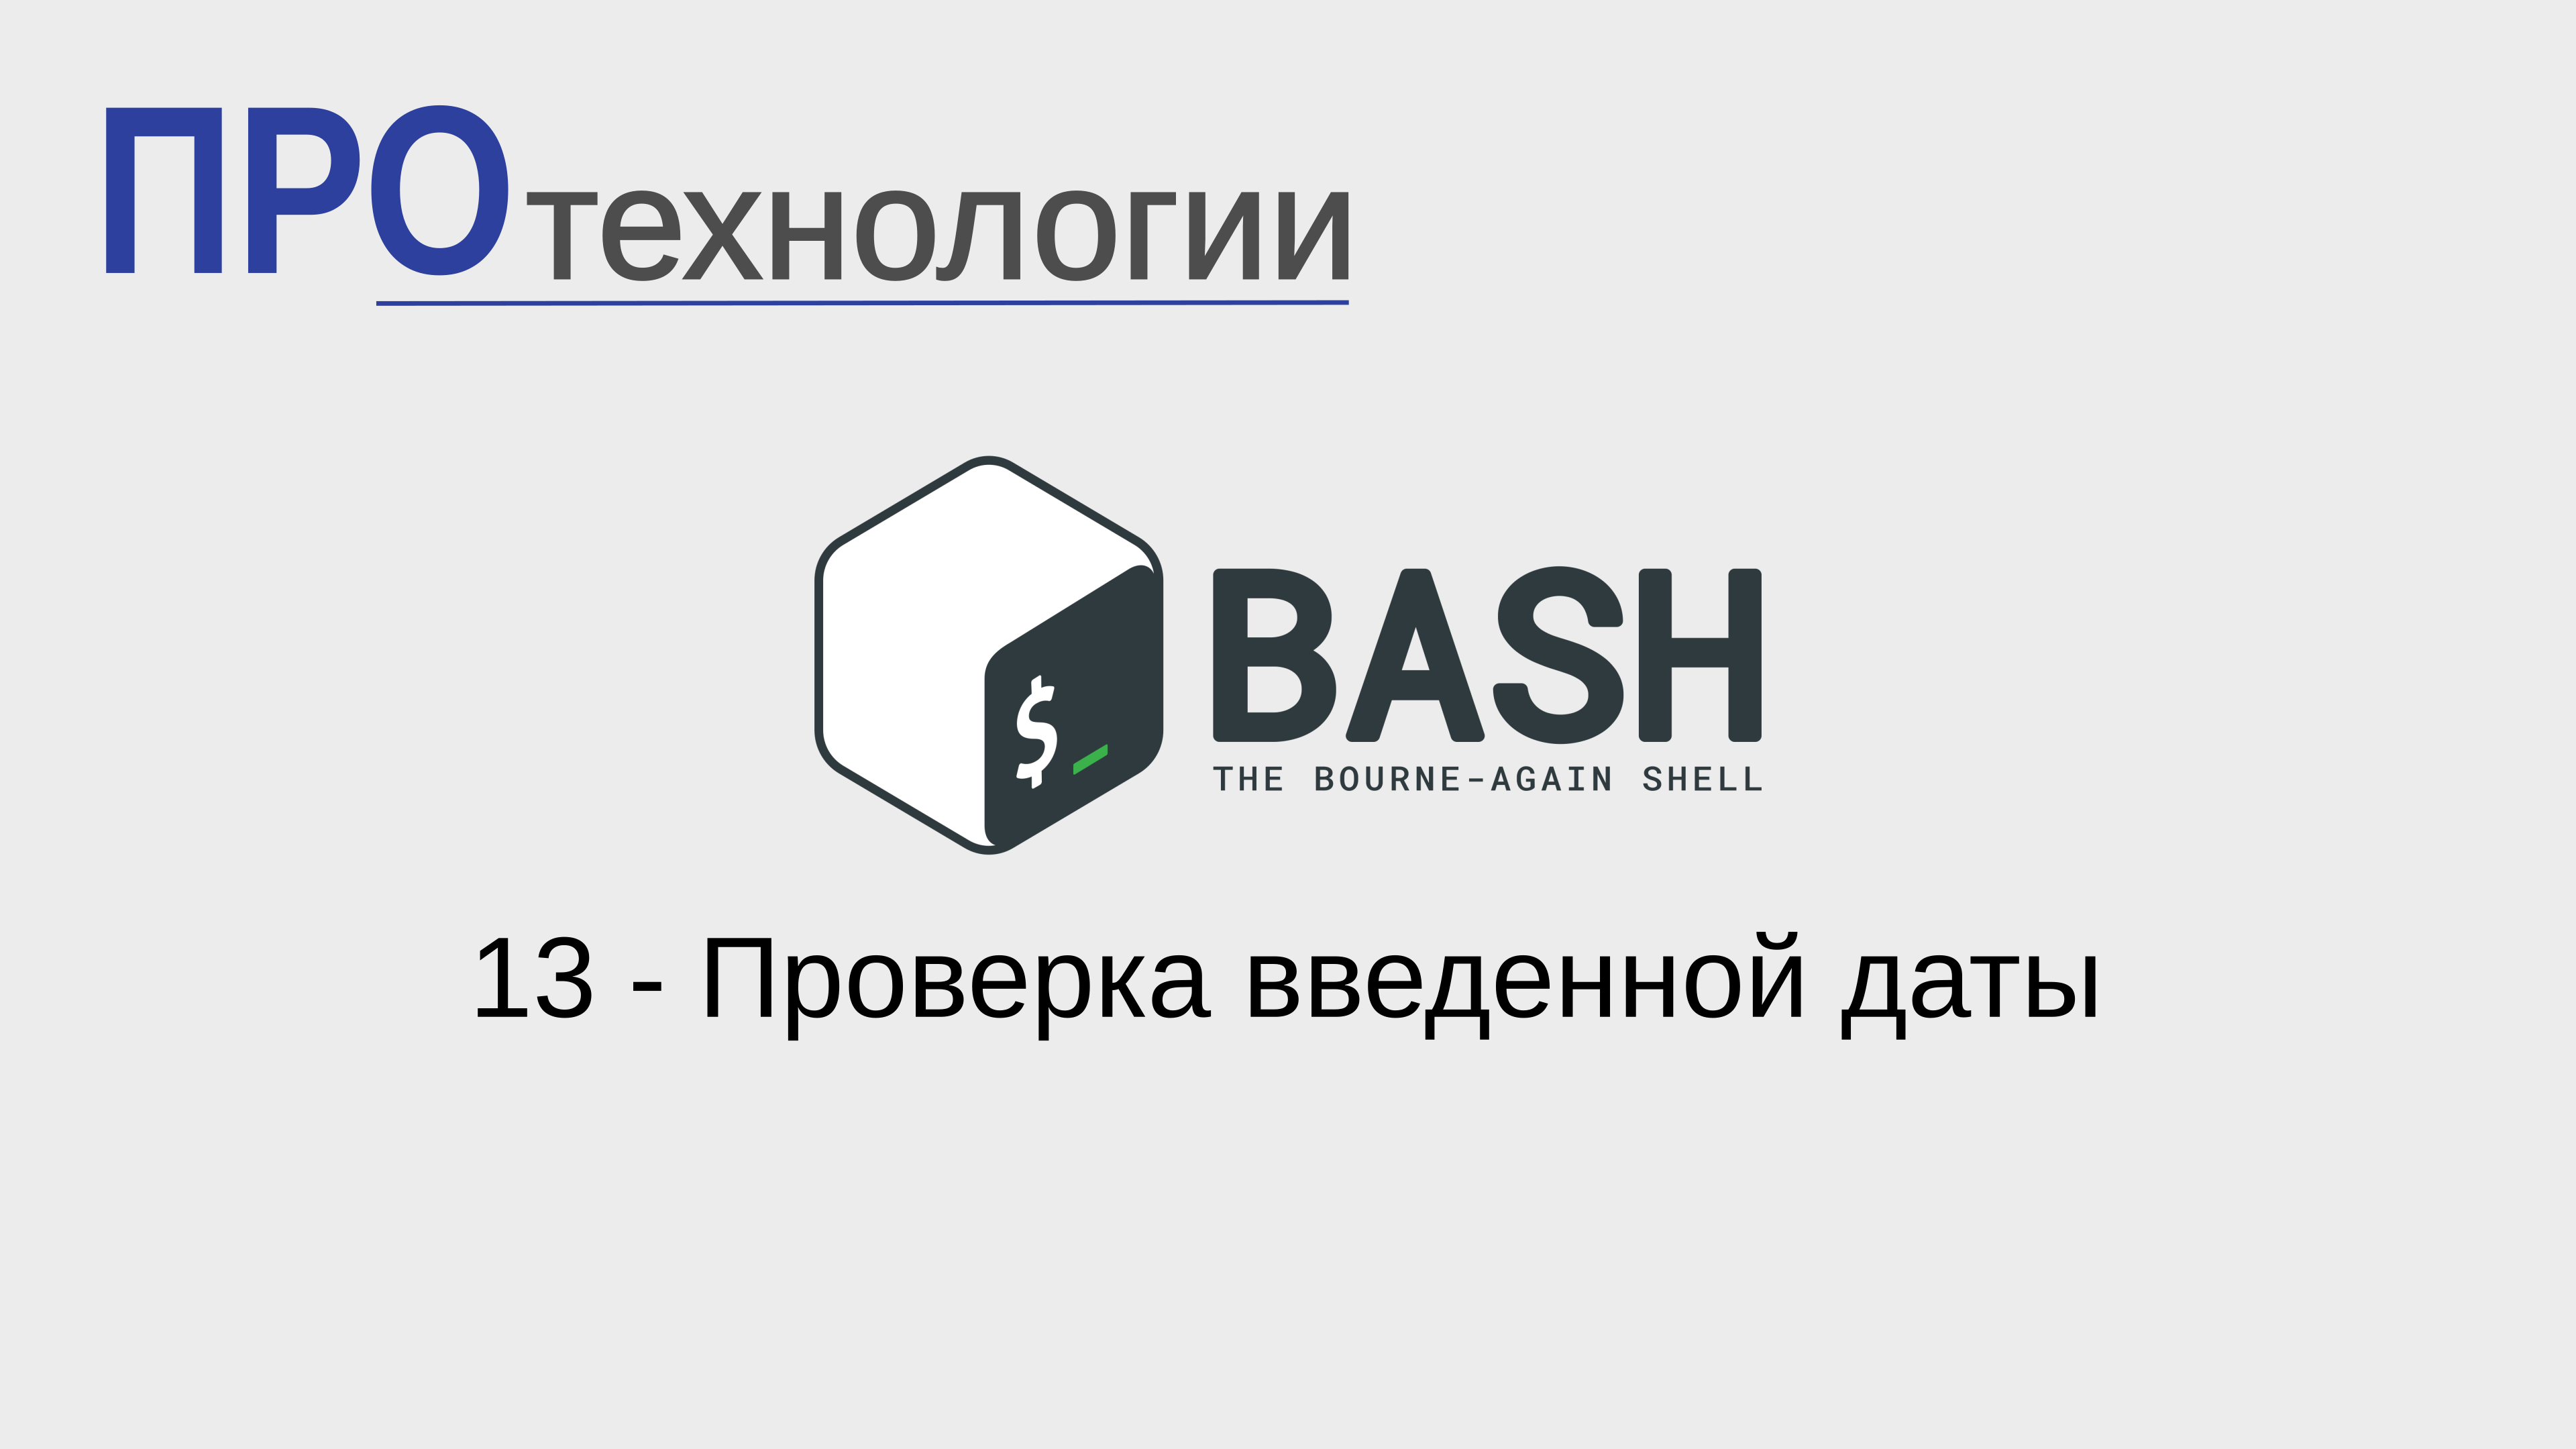 13 Bash - Проверка введенной даты